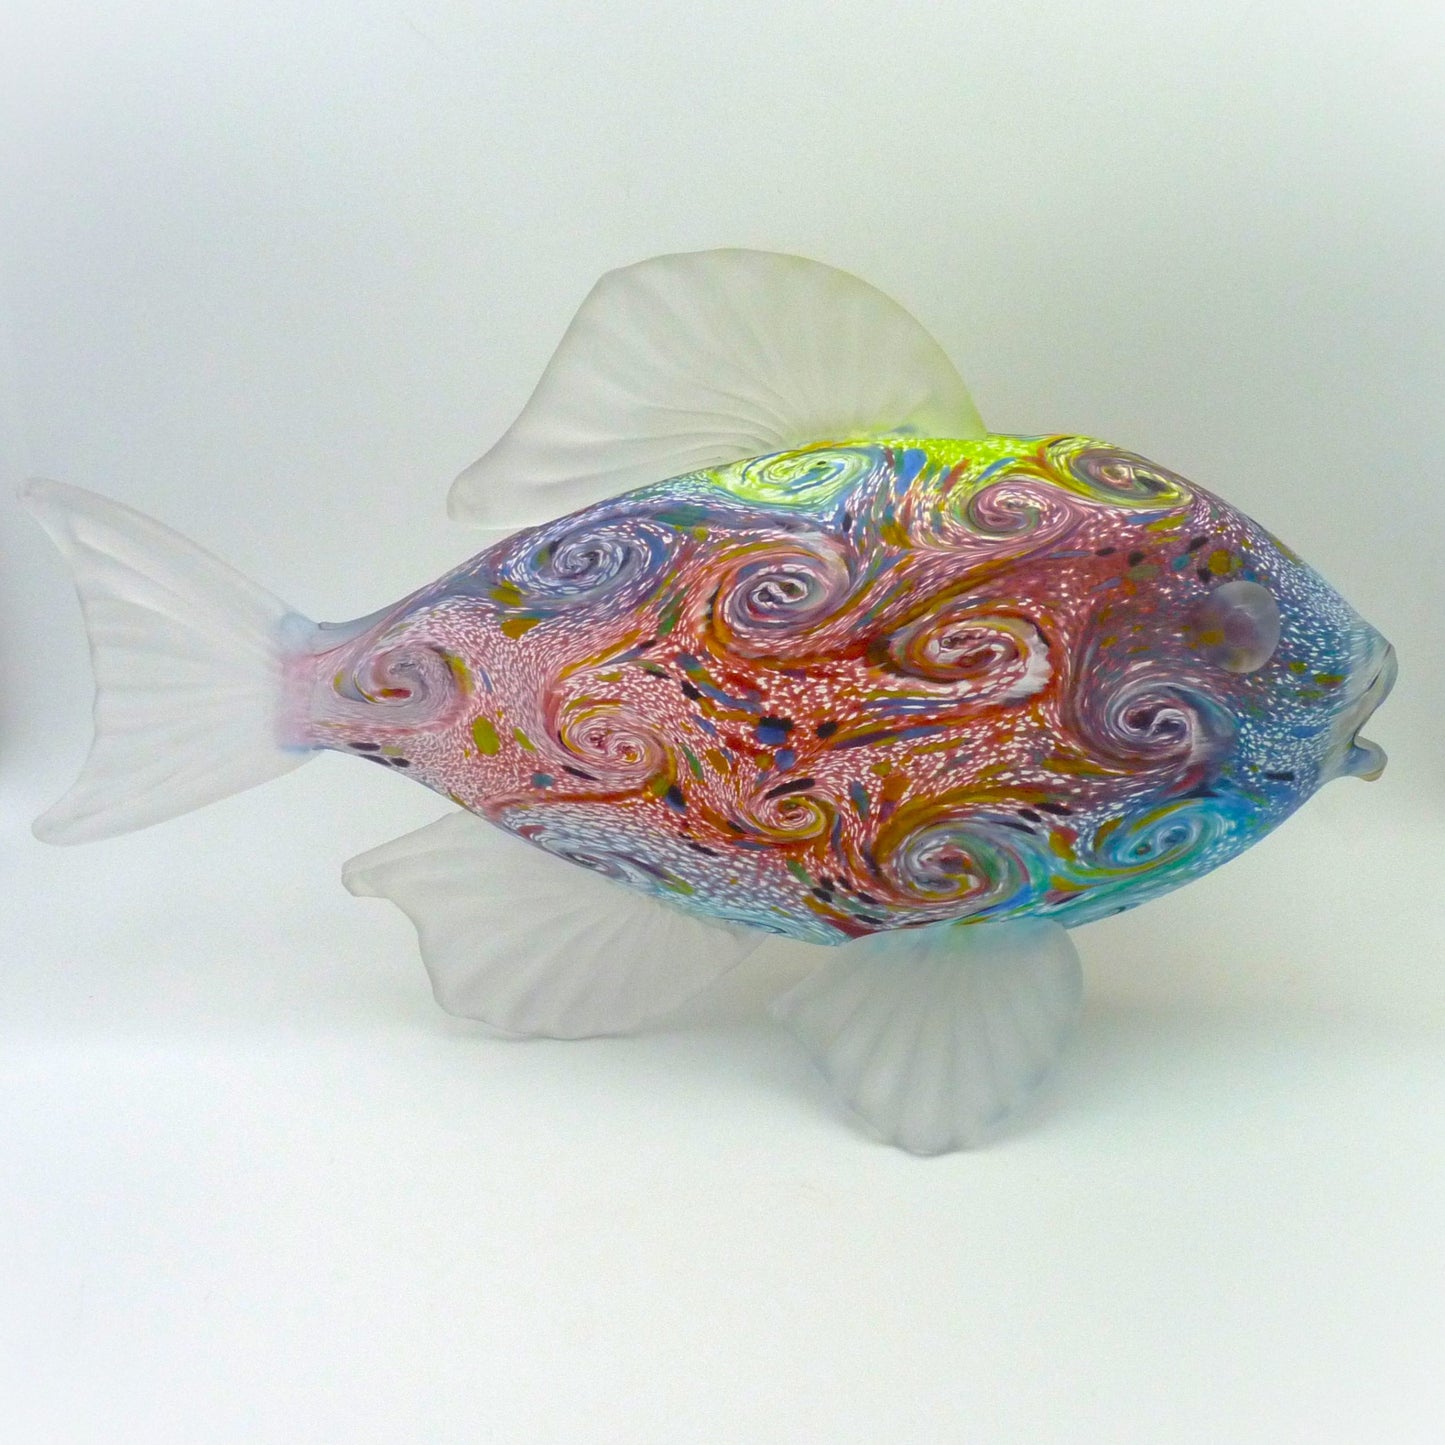 Starry Fish Multicolored